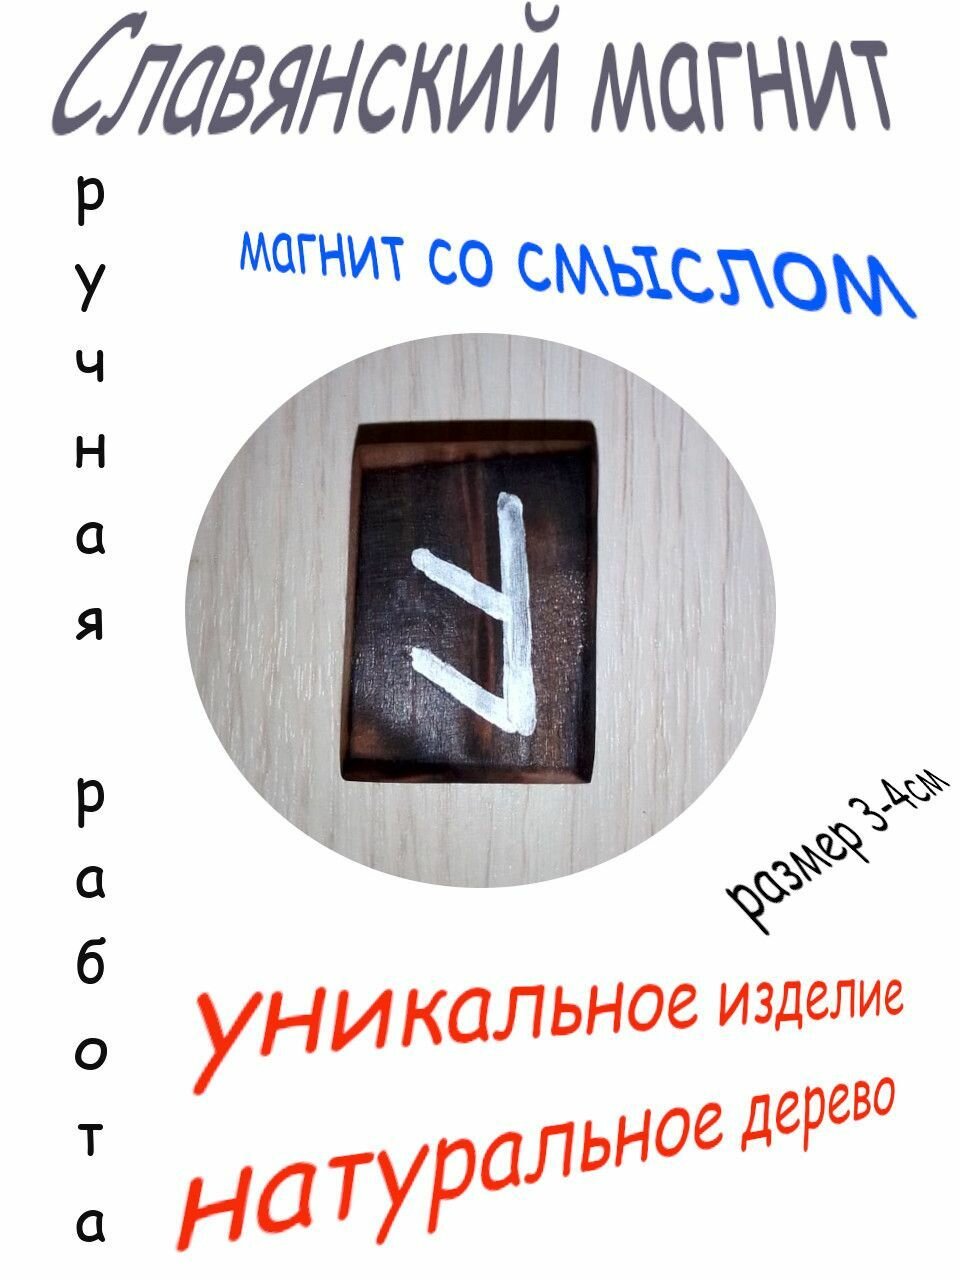 Магнит на холодильник, ручная славянская работа №4, (серебро)